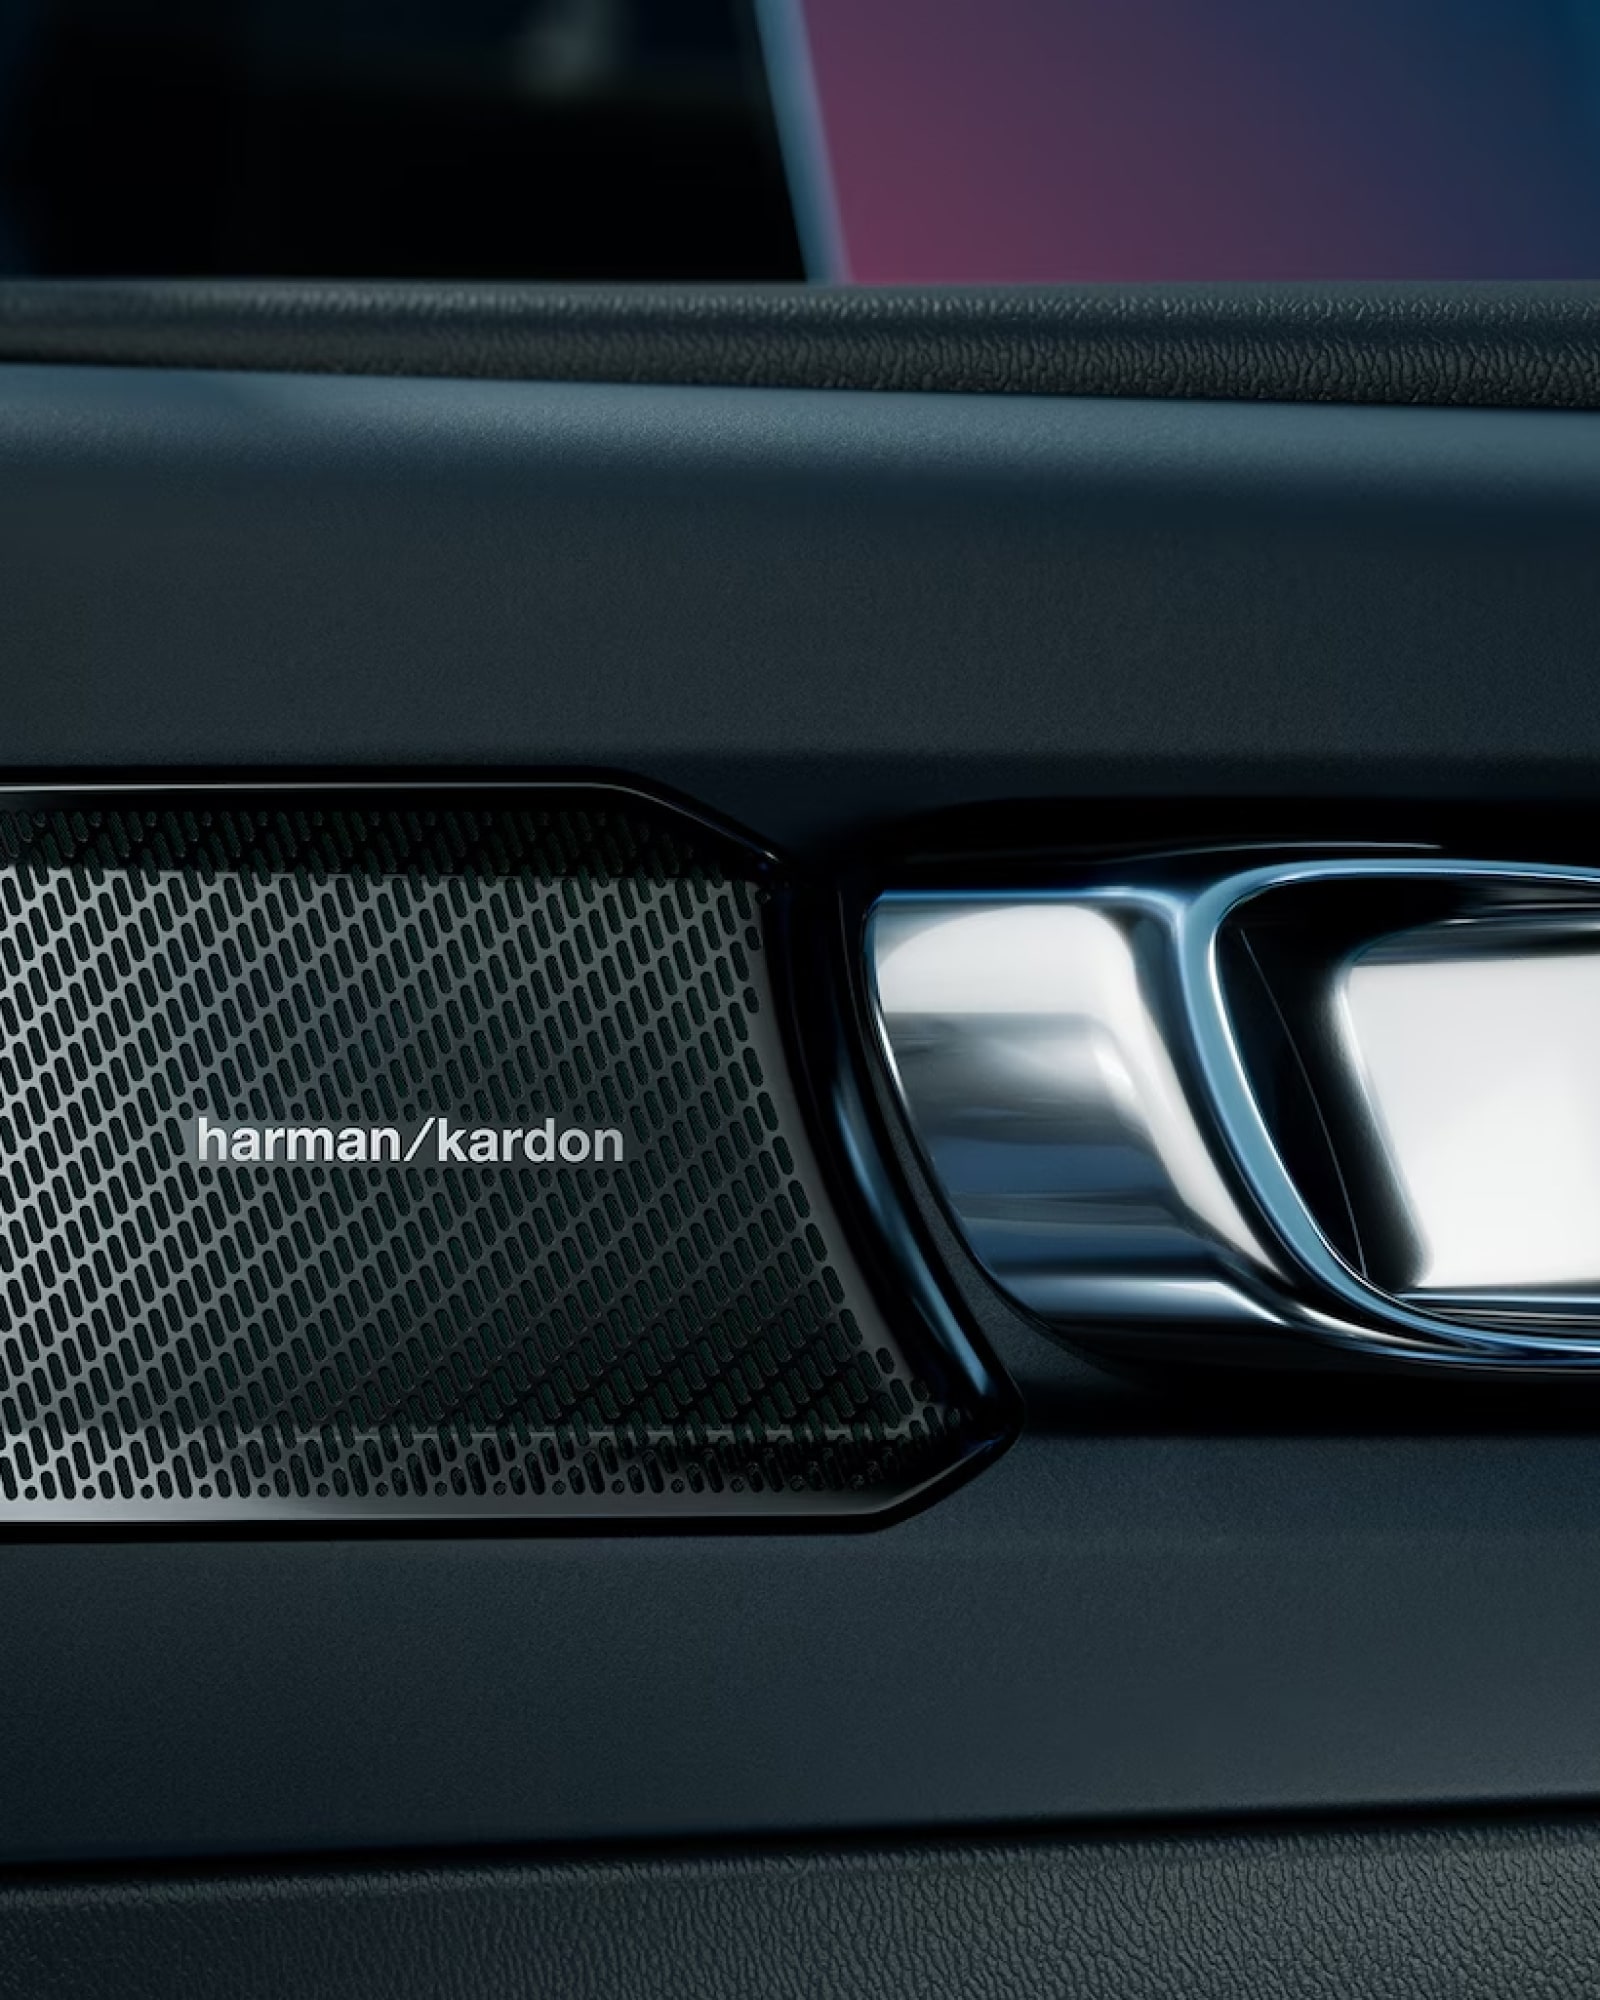 Ηχείο Harman Kardon, μέρος του premium ηχοσυστήματος που διατίθεται στο Volvo EC40.